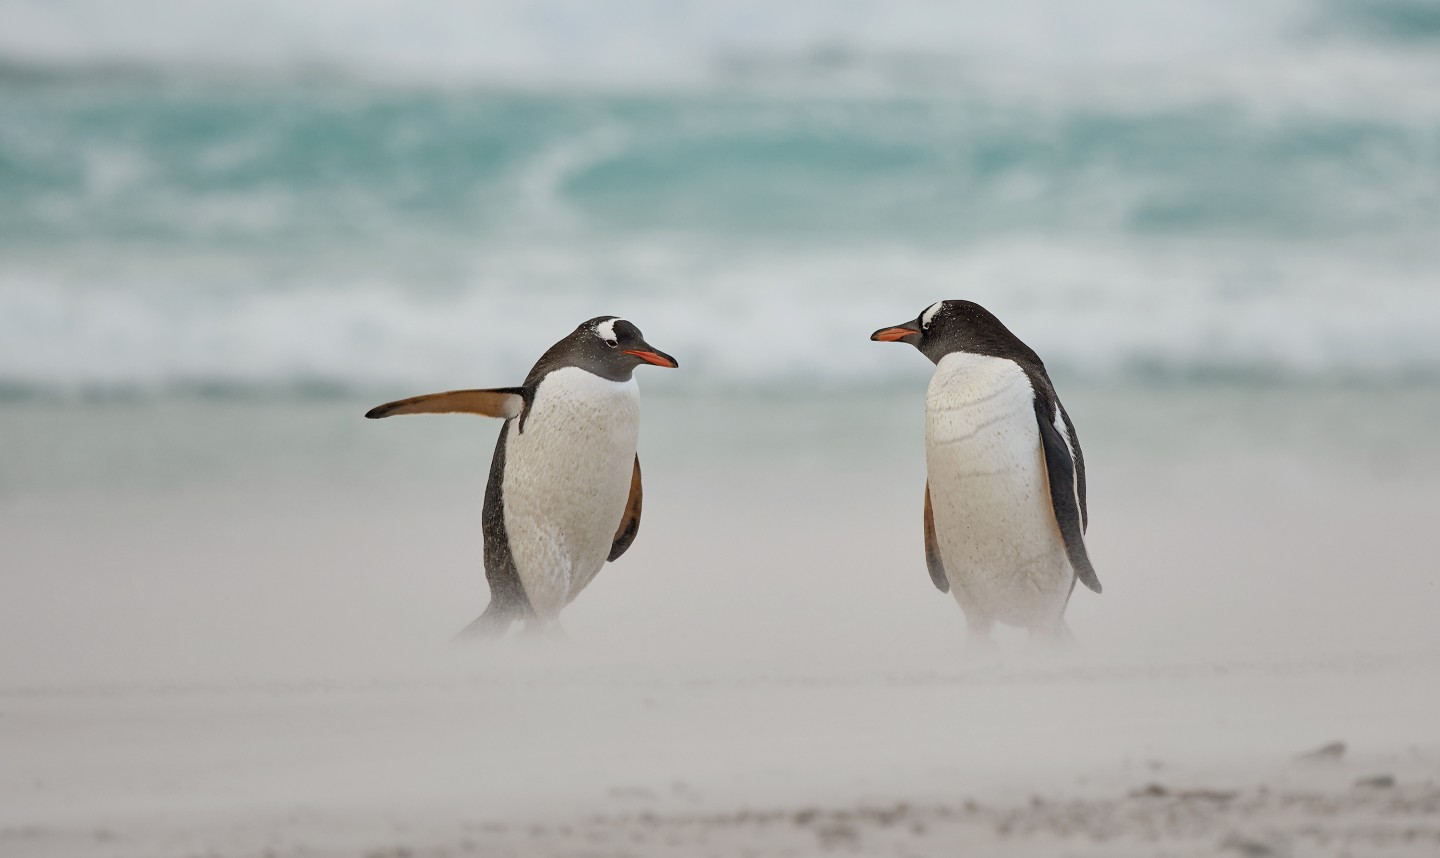 "Пингвин с руководящей и направляющей ролью". (Субантарктический пингвин на Фолклендских островах, Великобритания). Фото: © Carol Taylor / Comedy Wildlife Photography Awards 2021